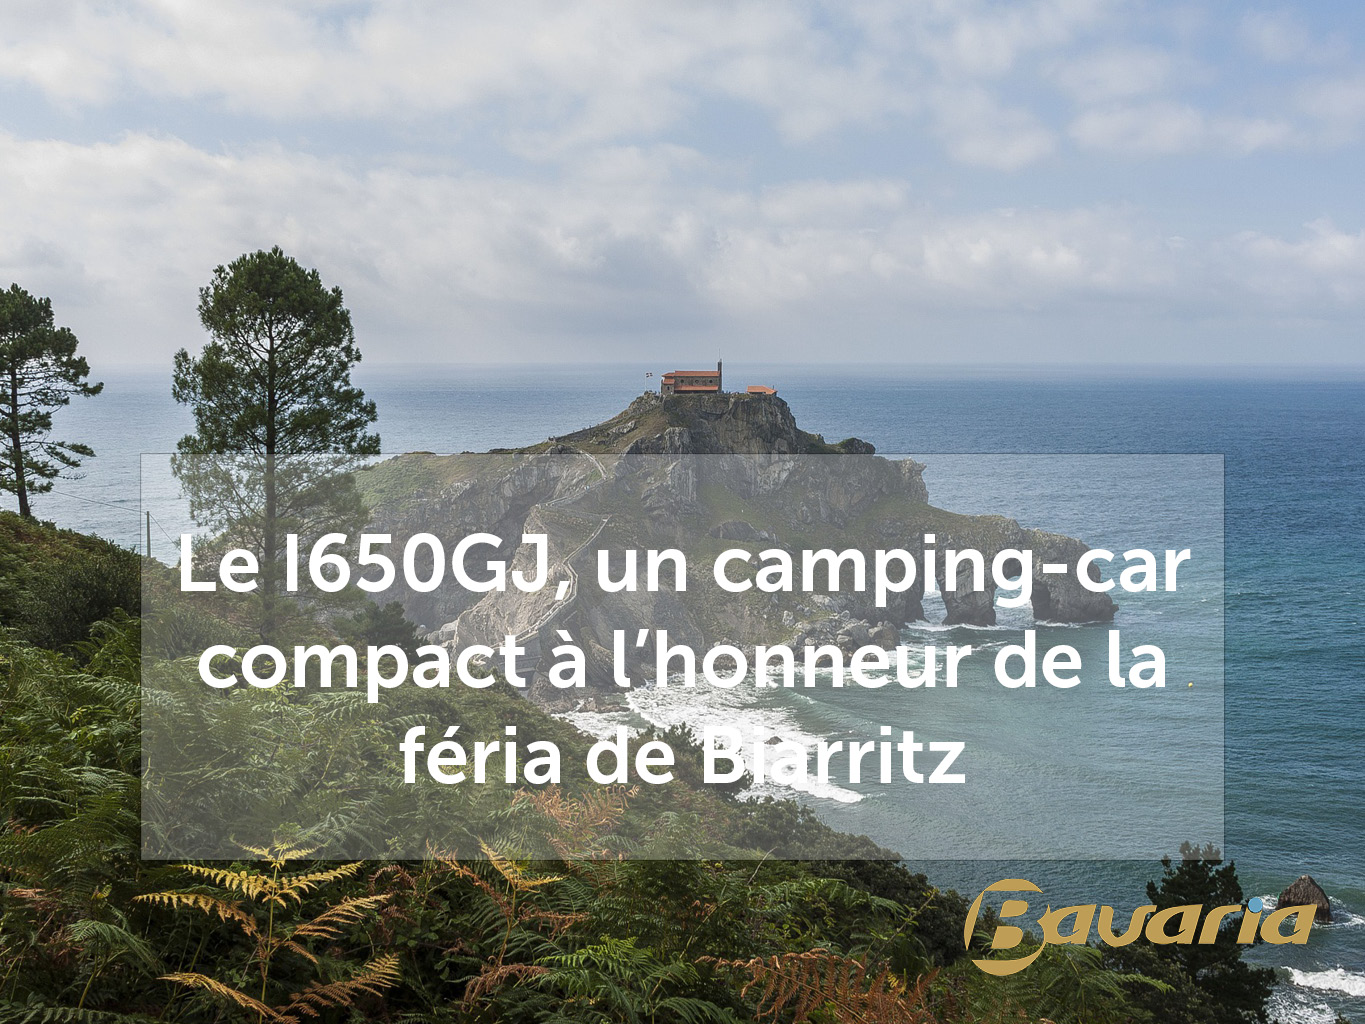 Camping-car compact Bavaria